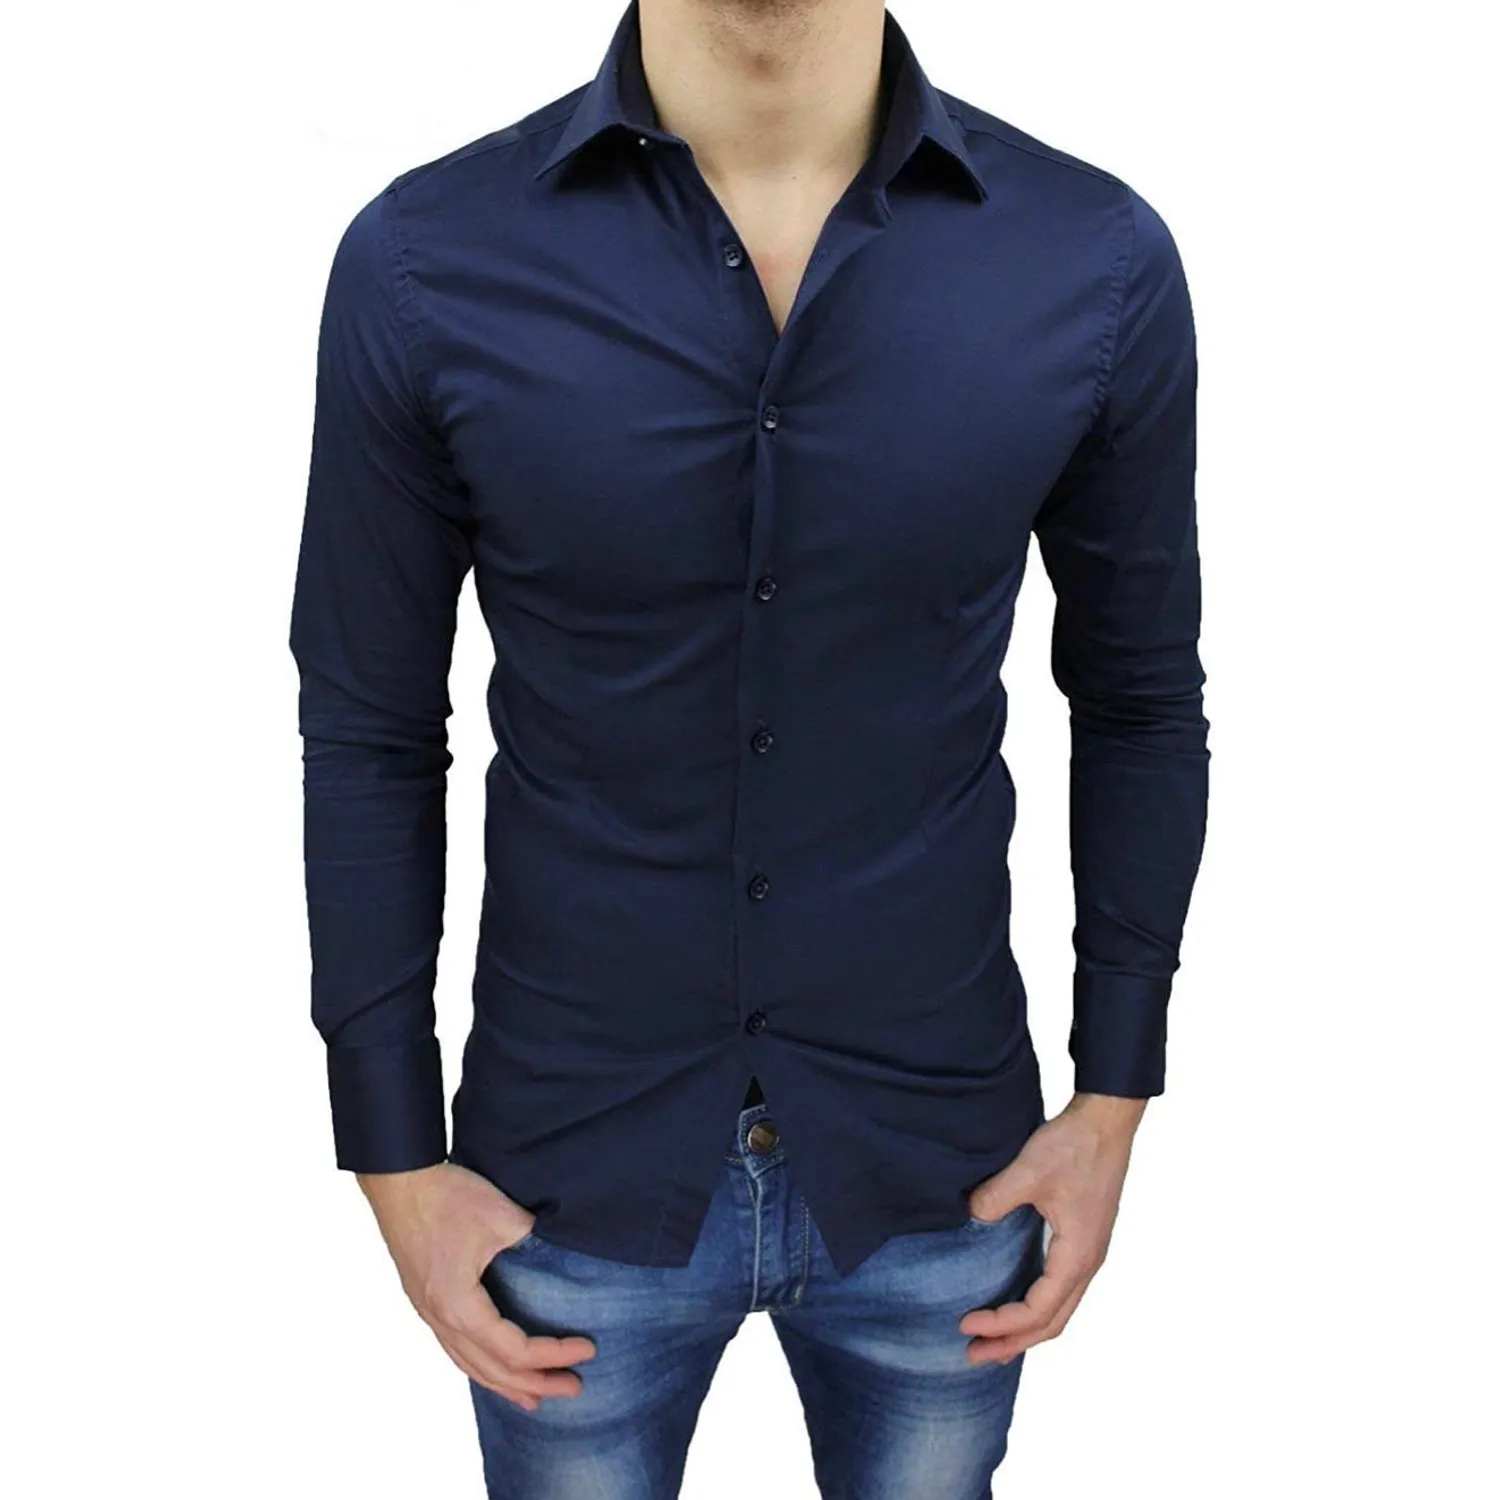 Ανδρικό μακρυμάνικο πουκάμισο μονόχρωμο μπλε